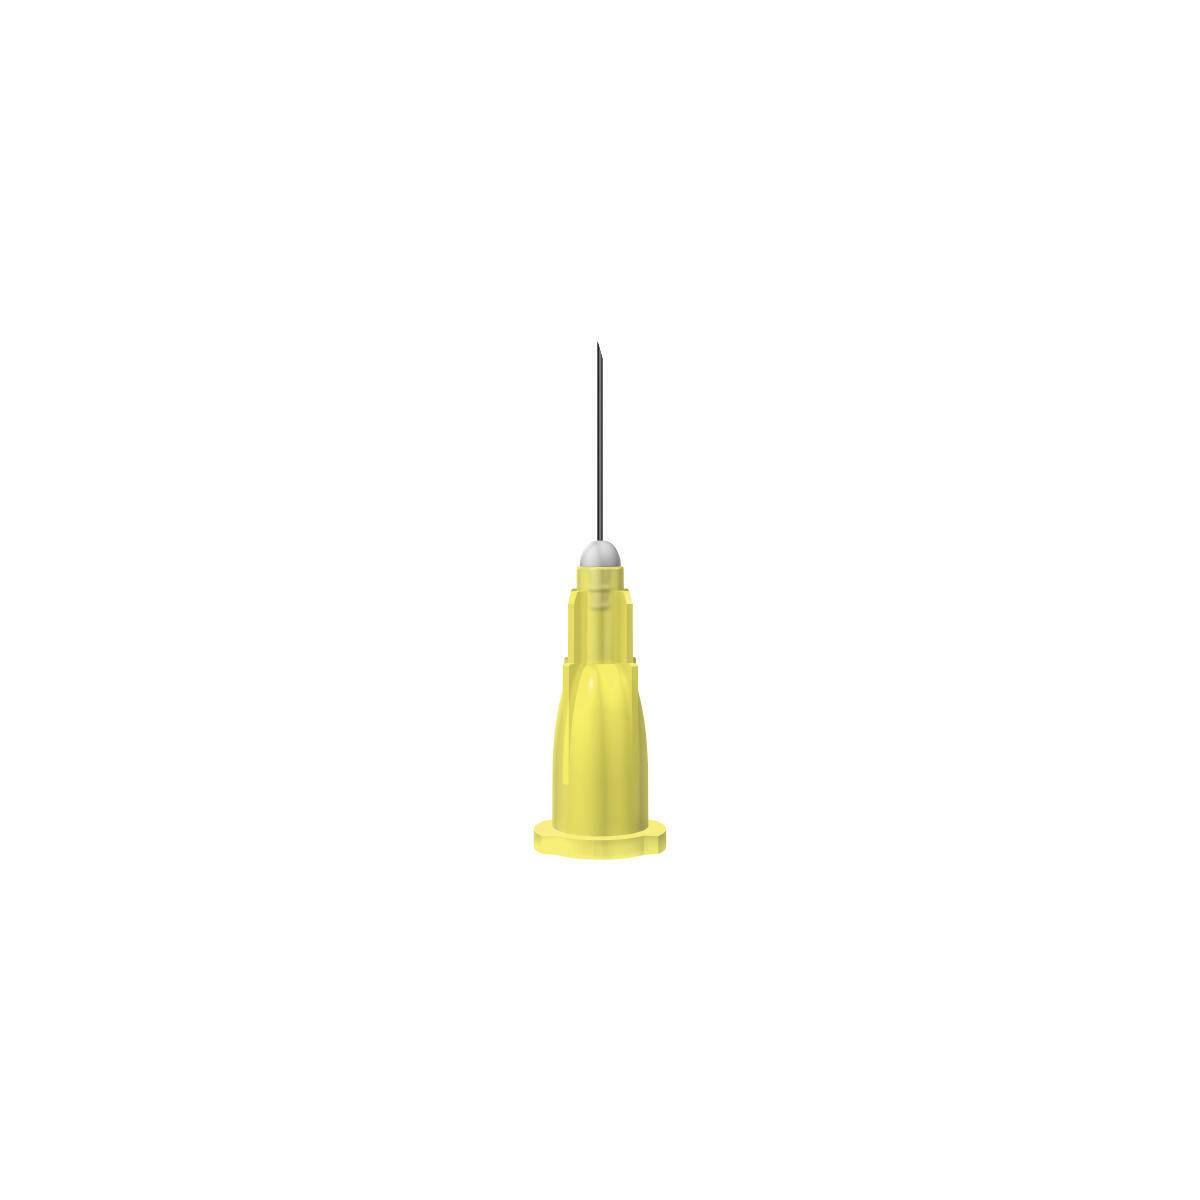 30g Yellow 0.5 Inch Unisharp Needles